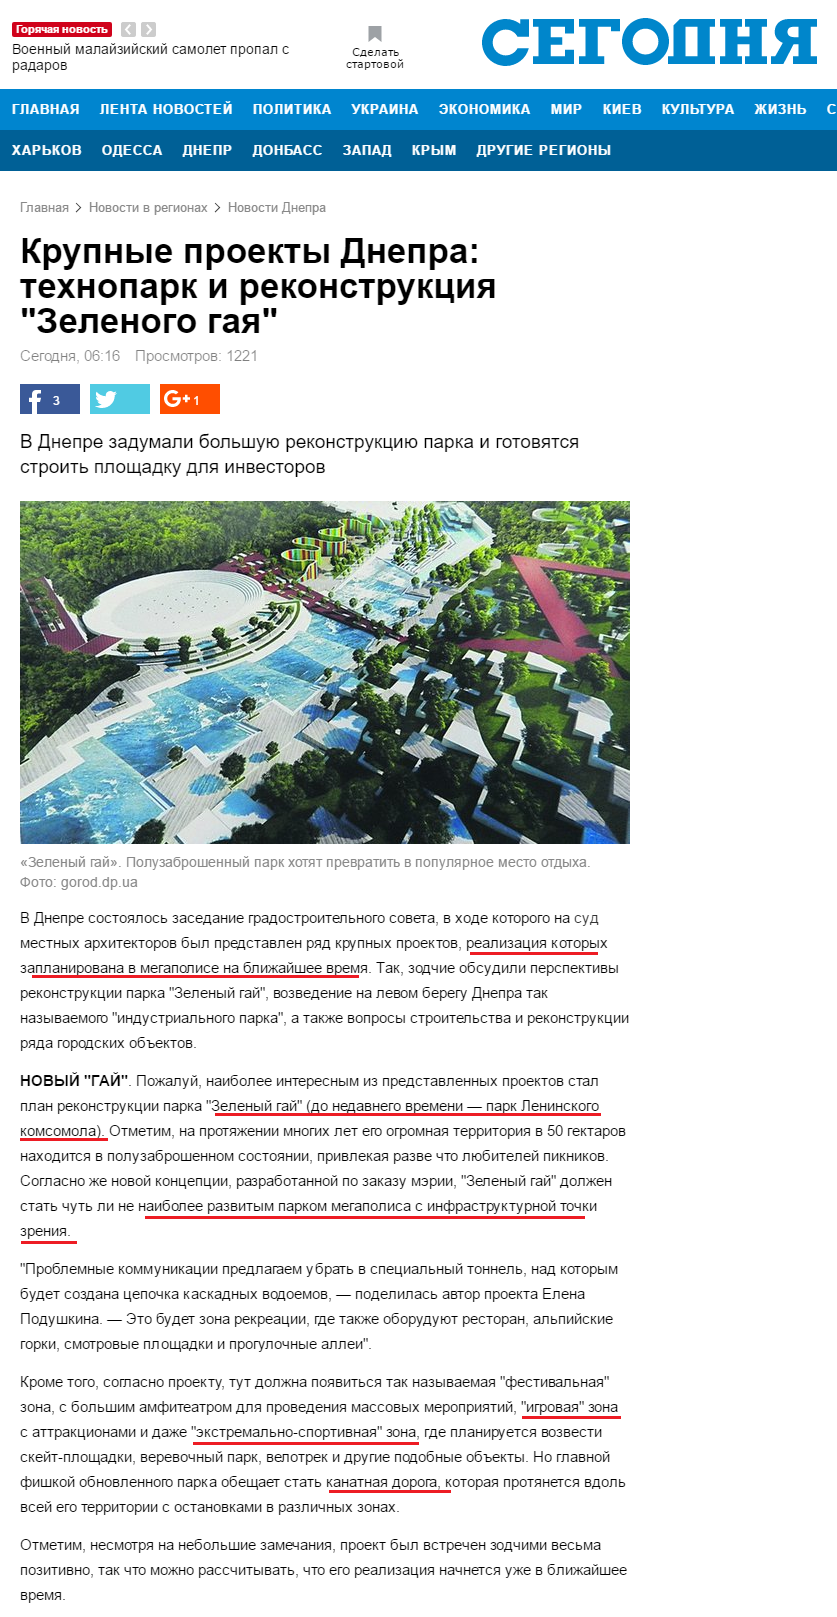 http://www.segodnya.ua/regions/dnepr/krupnye-proekty-dnepra-tehnopark-i-rekonstrukciya-zelenogo-gaya--1030088.html